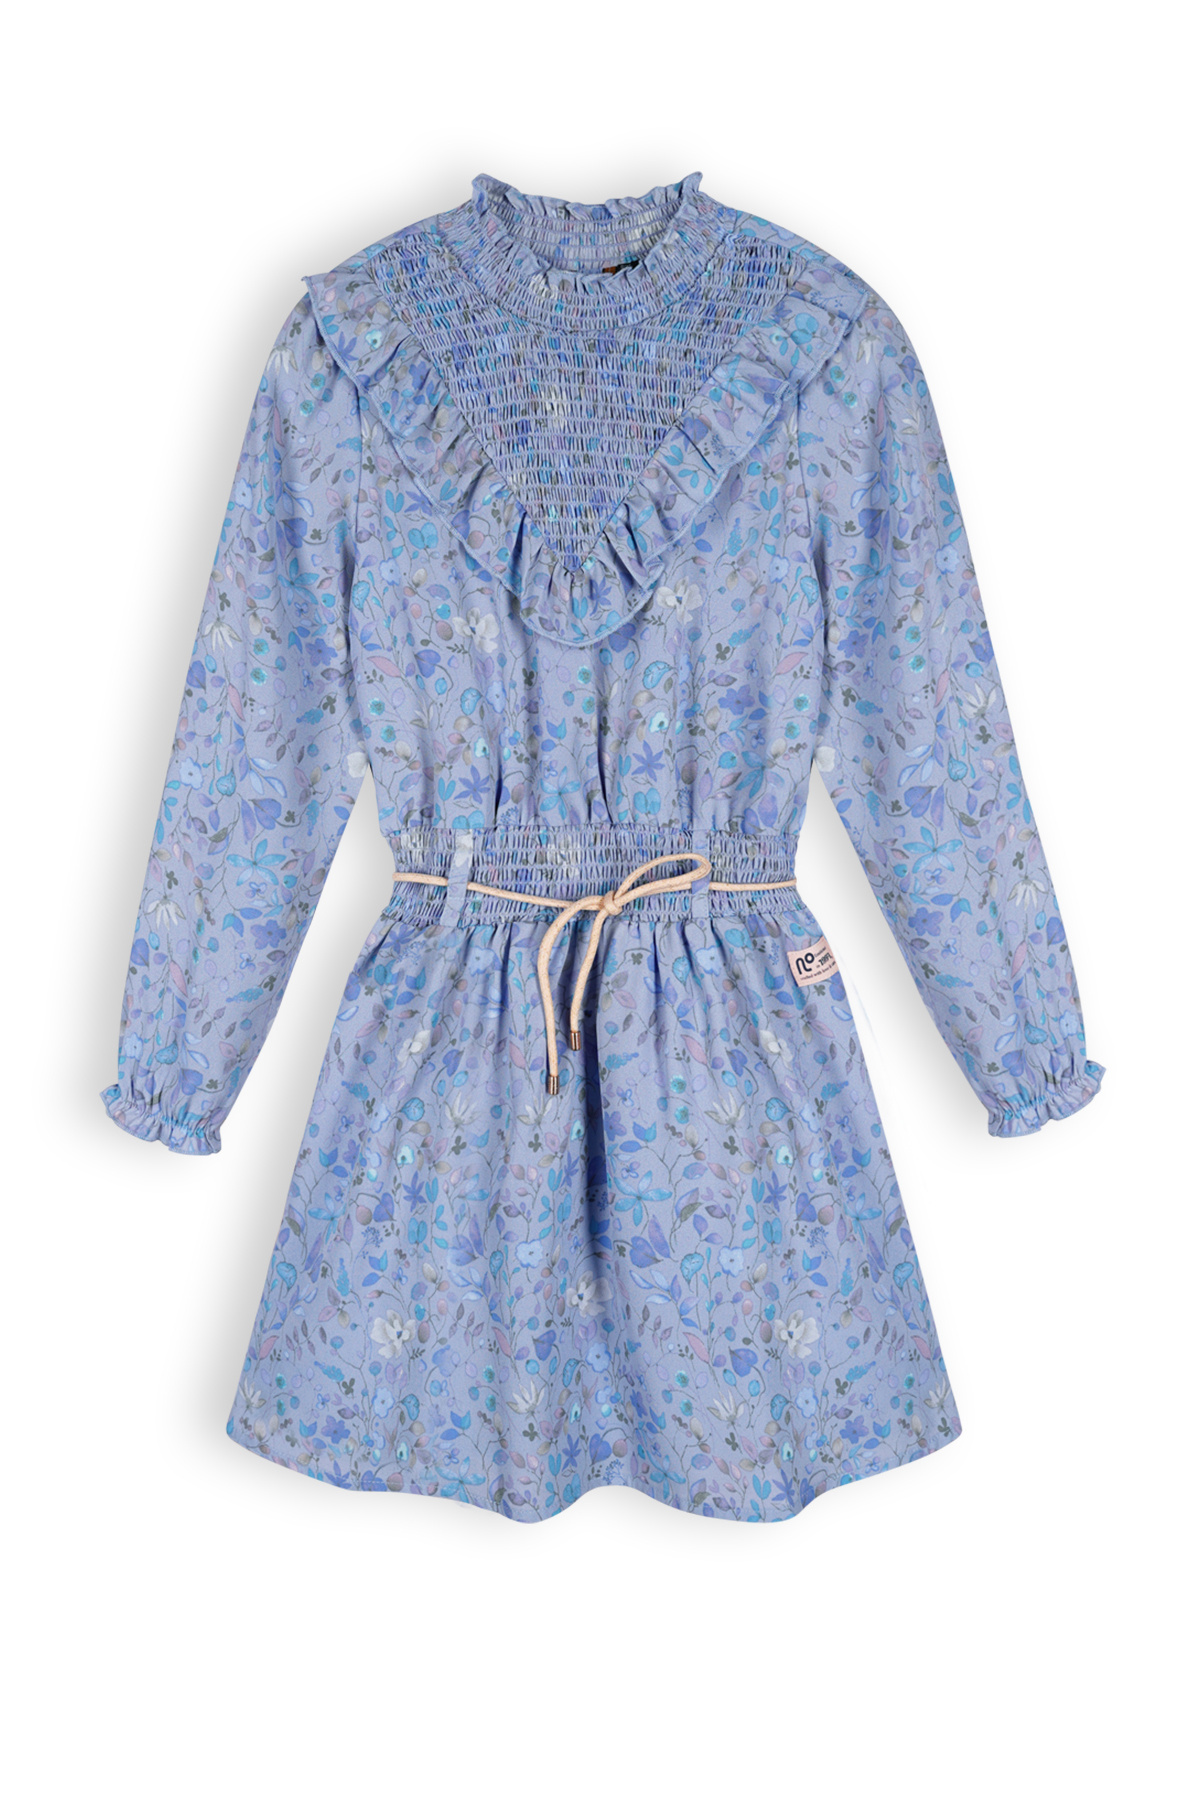 Meisjes jurk AOP - Mayana - Provence blauw